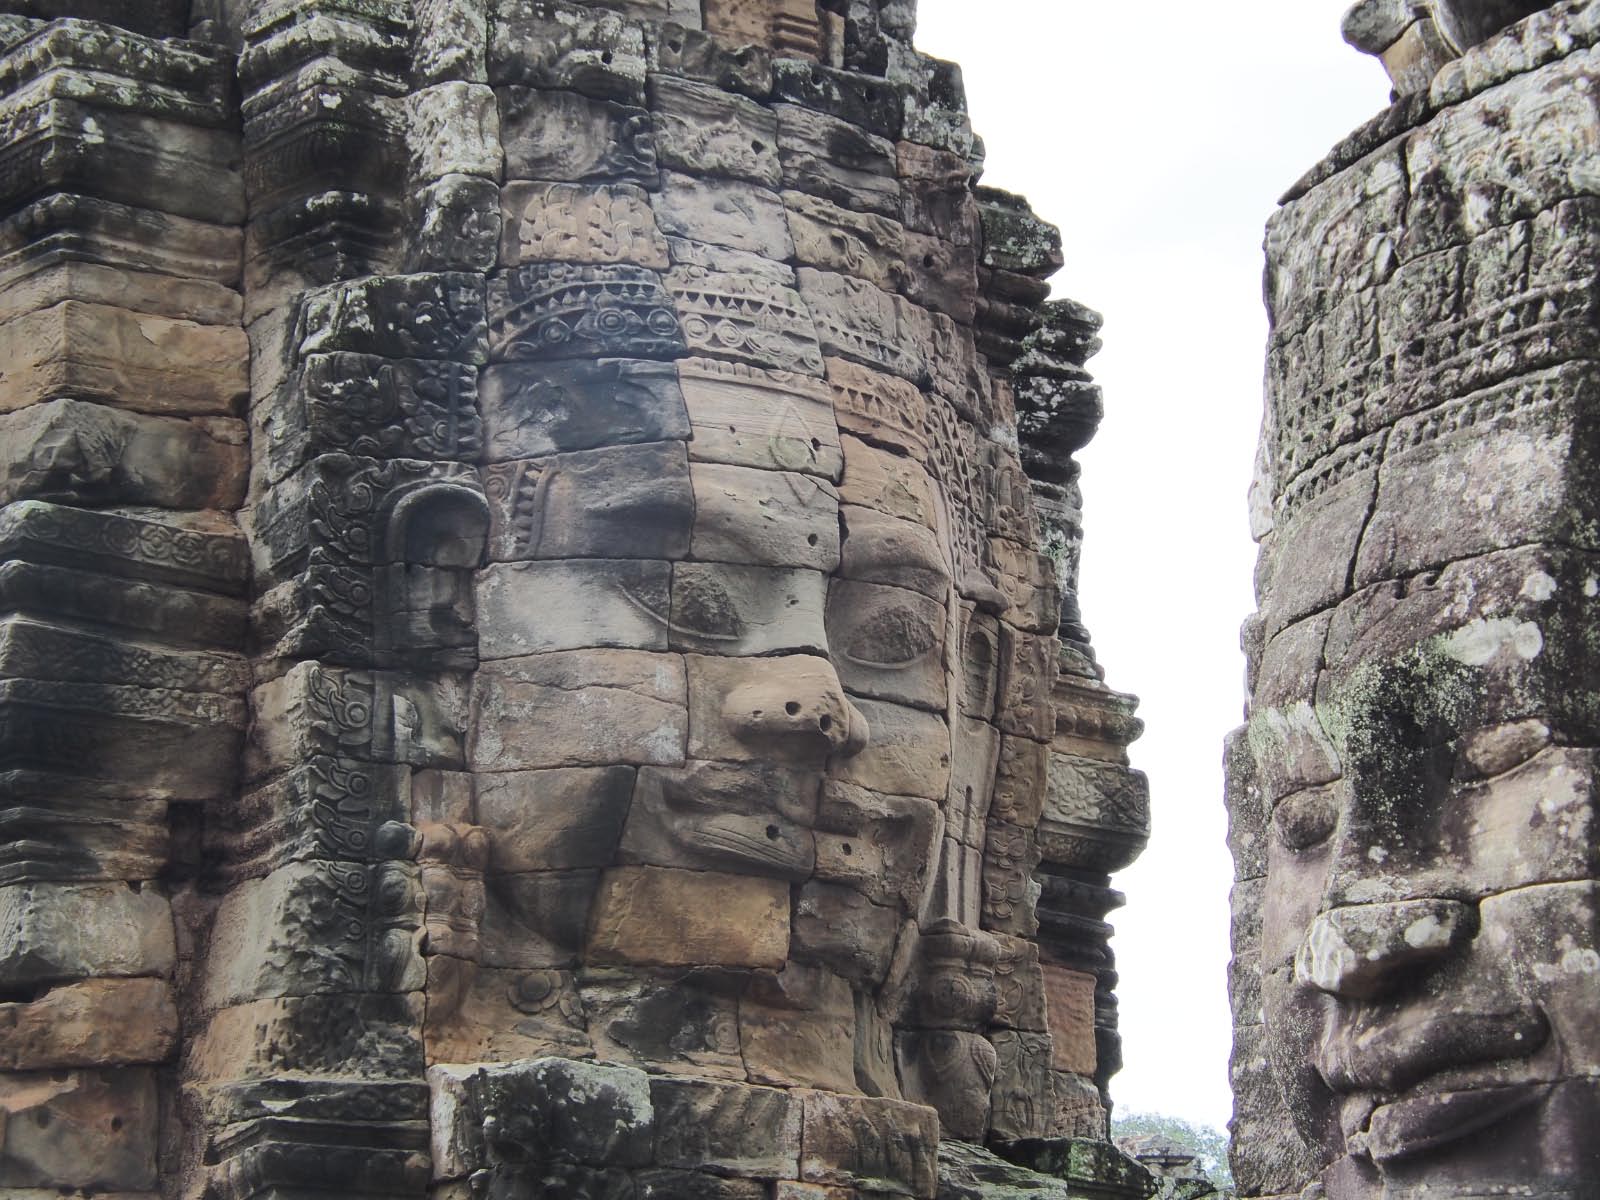 Angkor - la Bayon